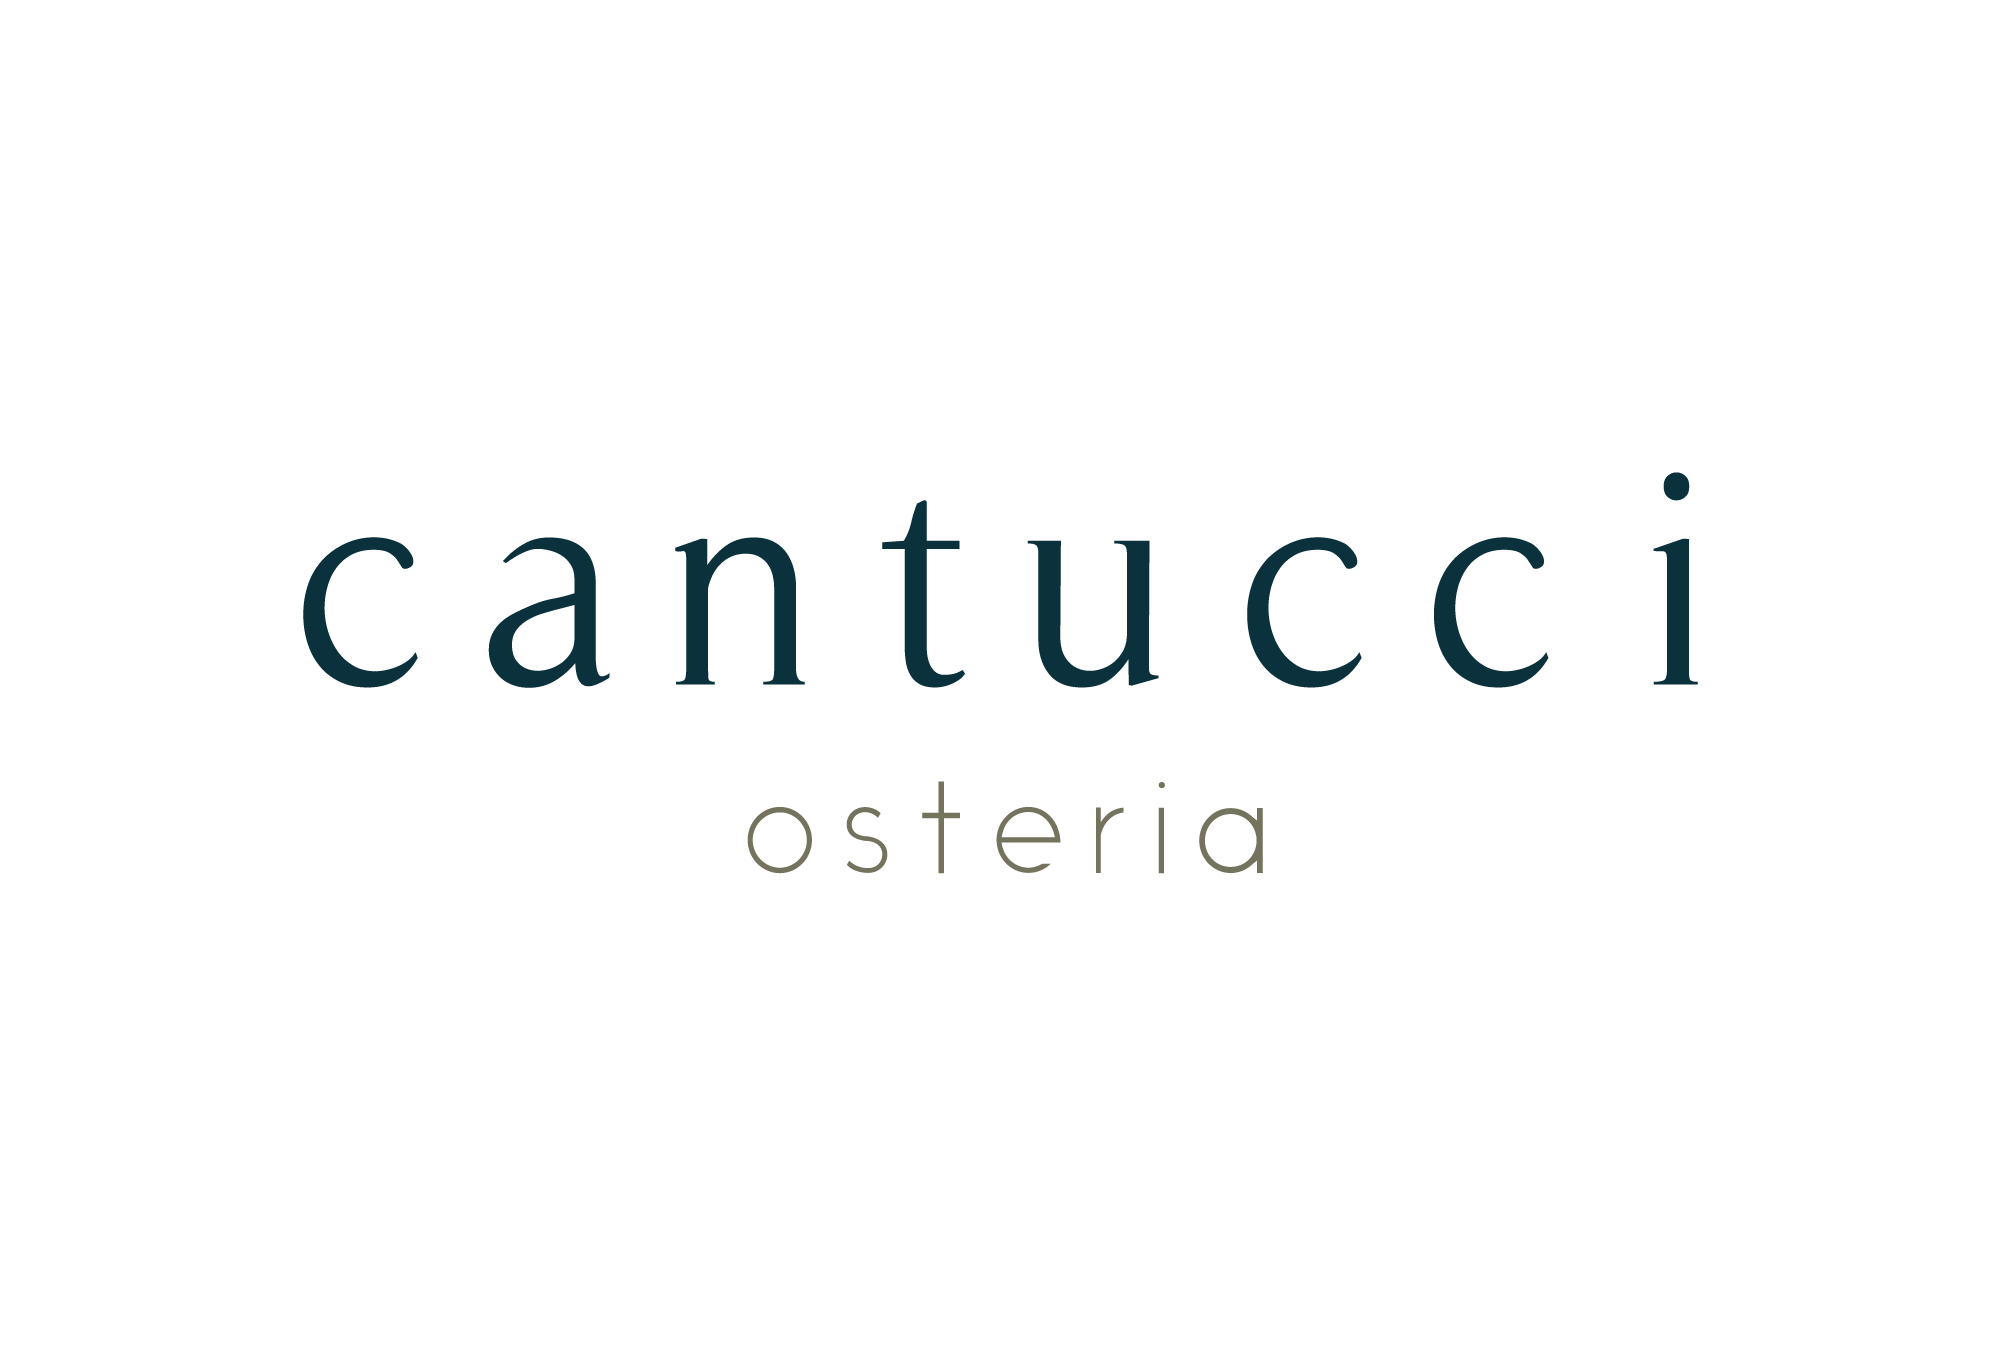 Cantucci Osteria